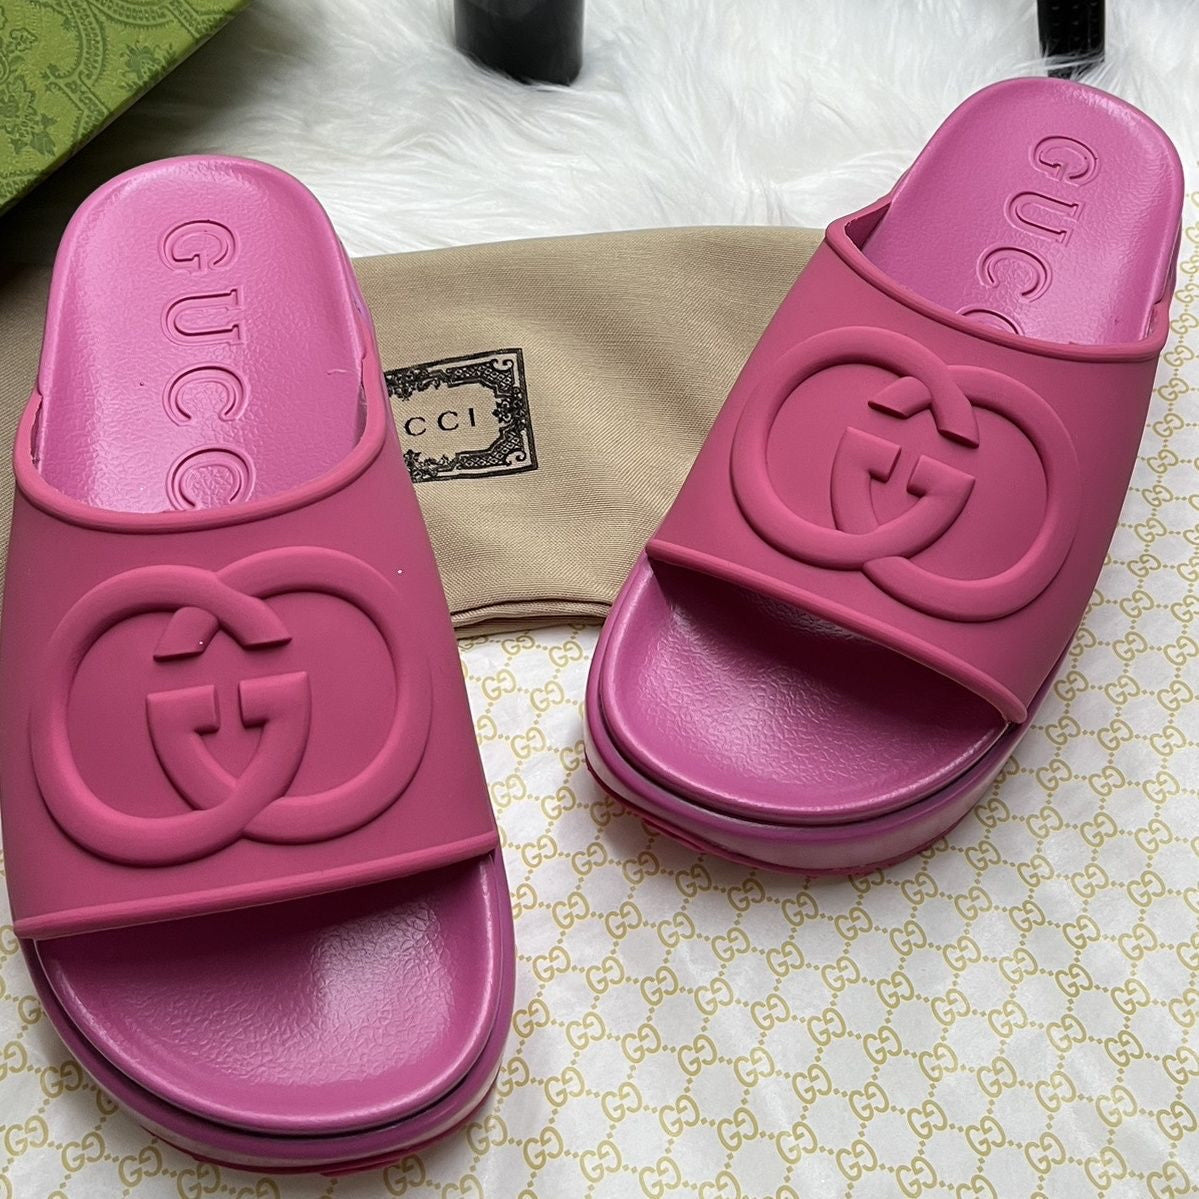 G crocs sandals